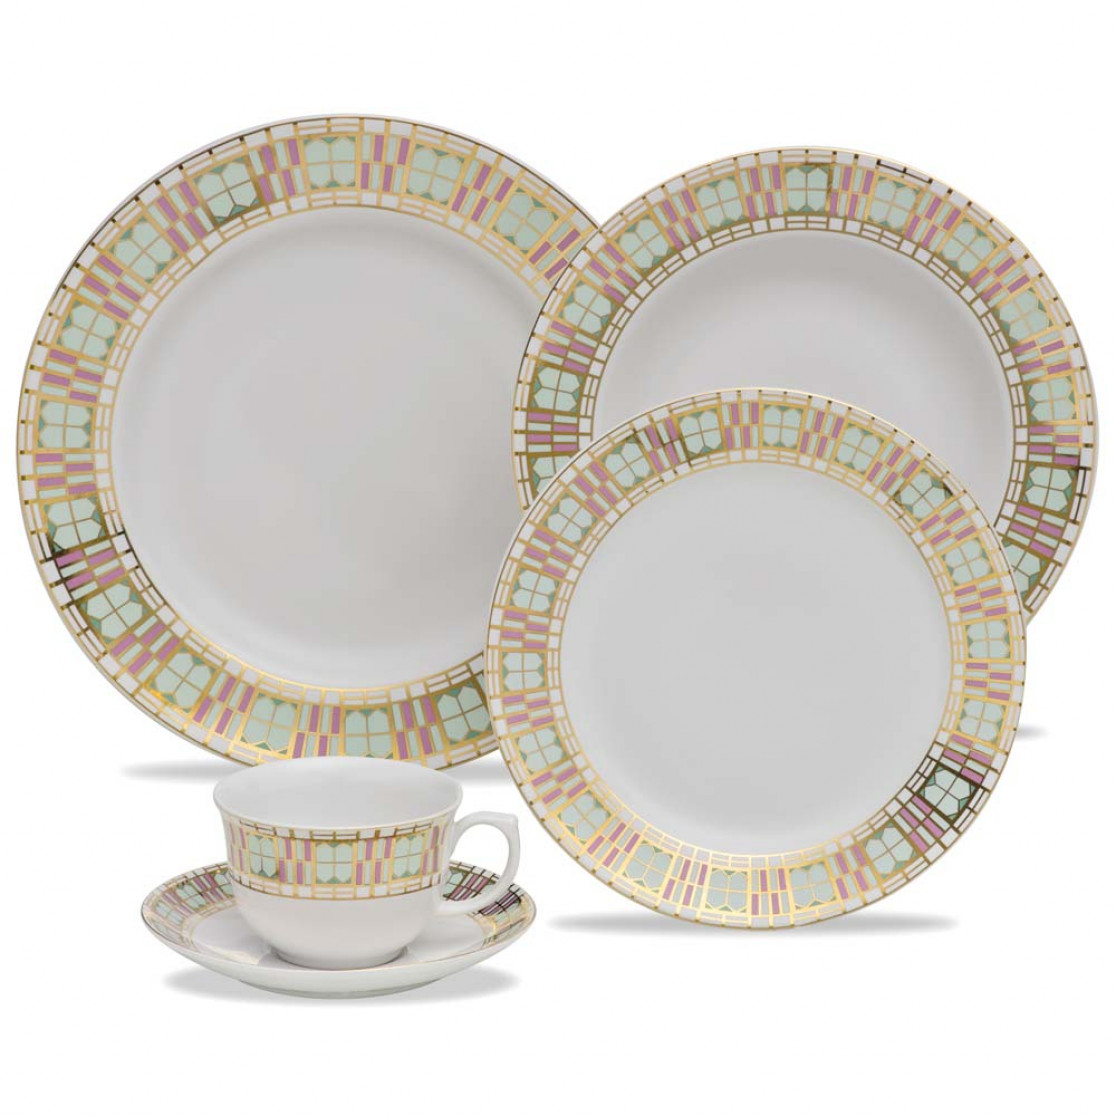 Aparelho de Jantar e Chá 30 peças Oxford Porcelanas -Flamingo Déco  